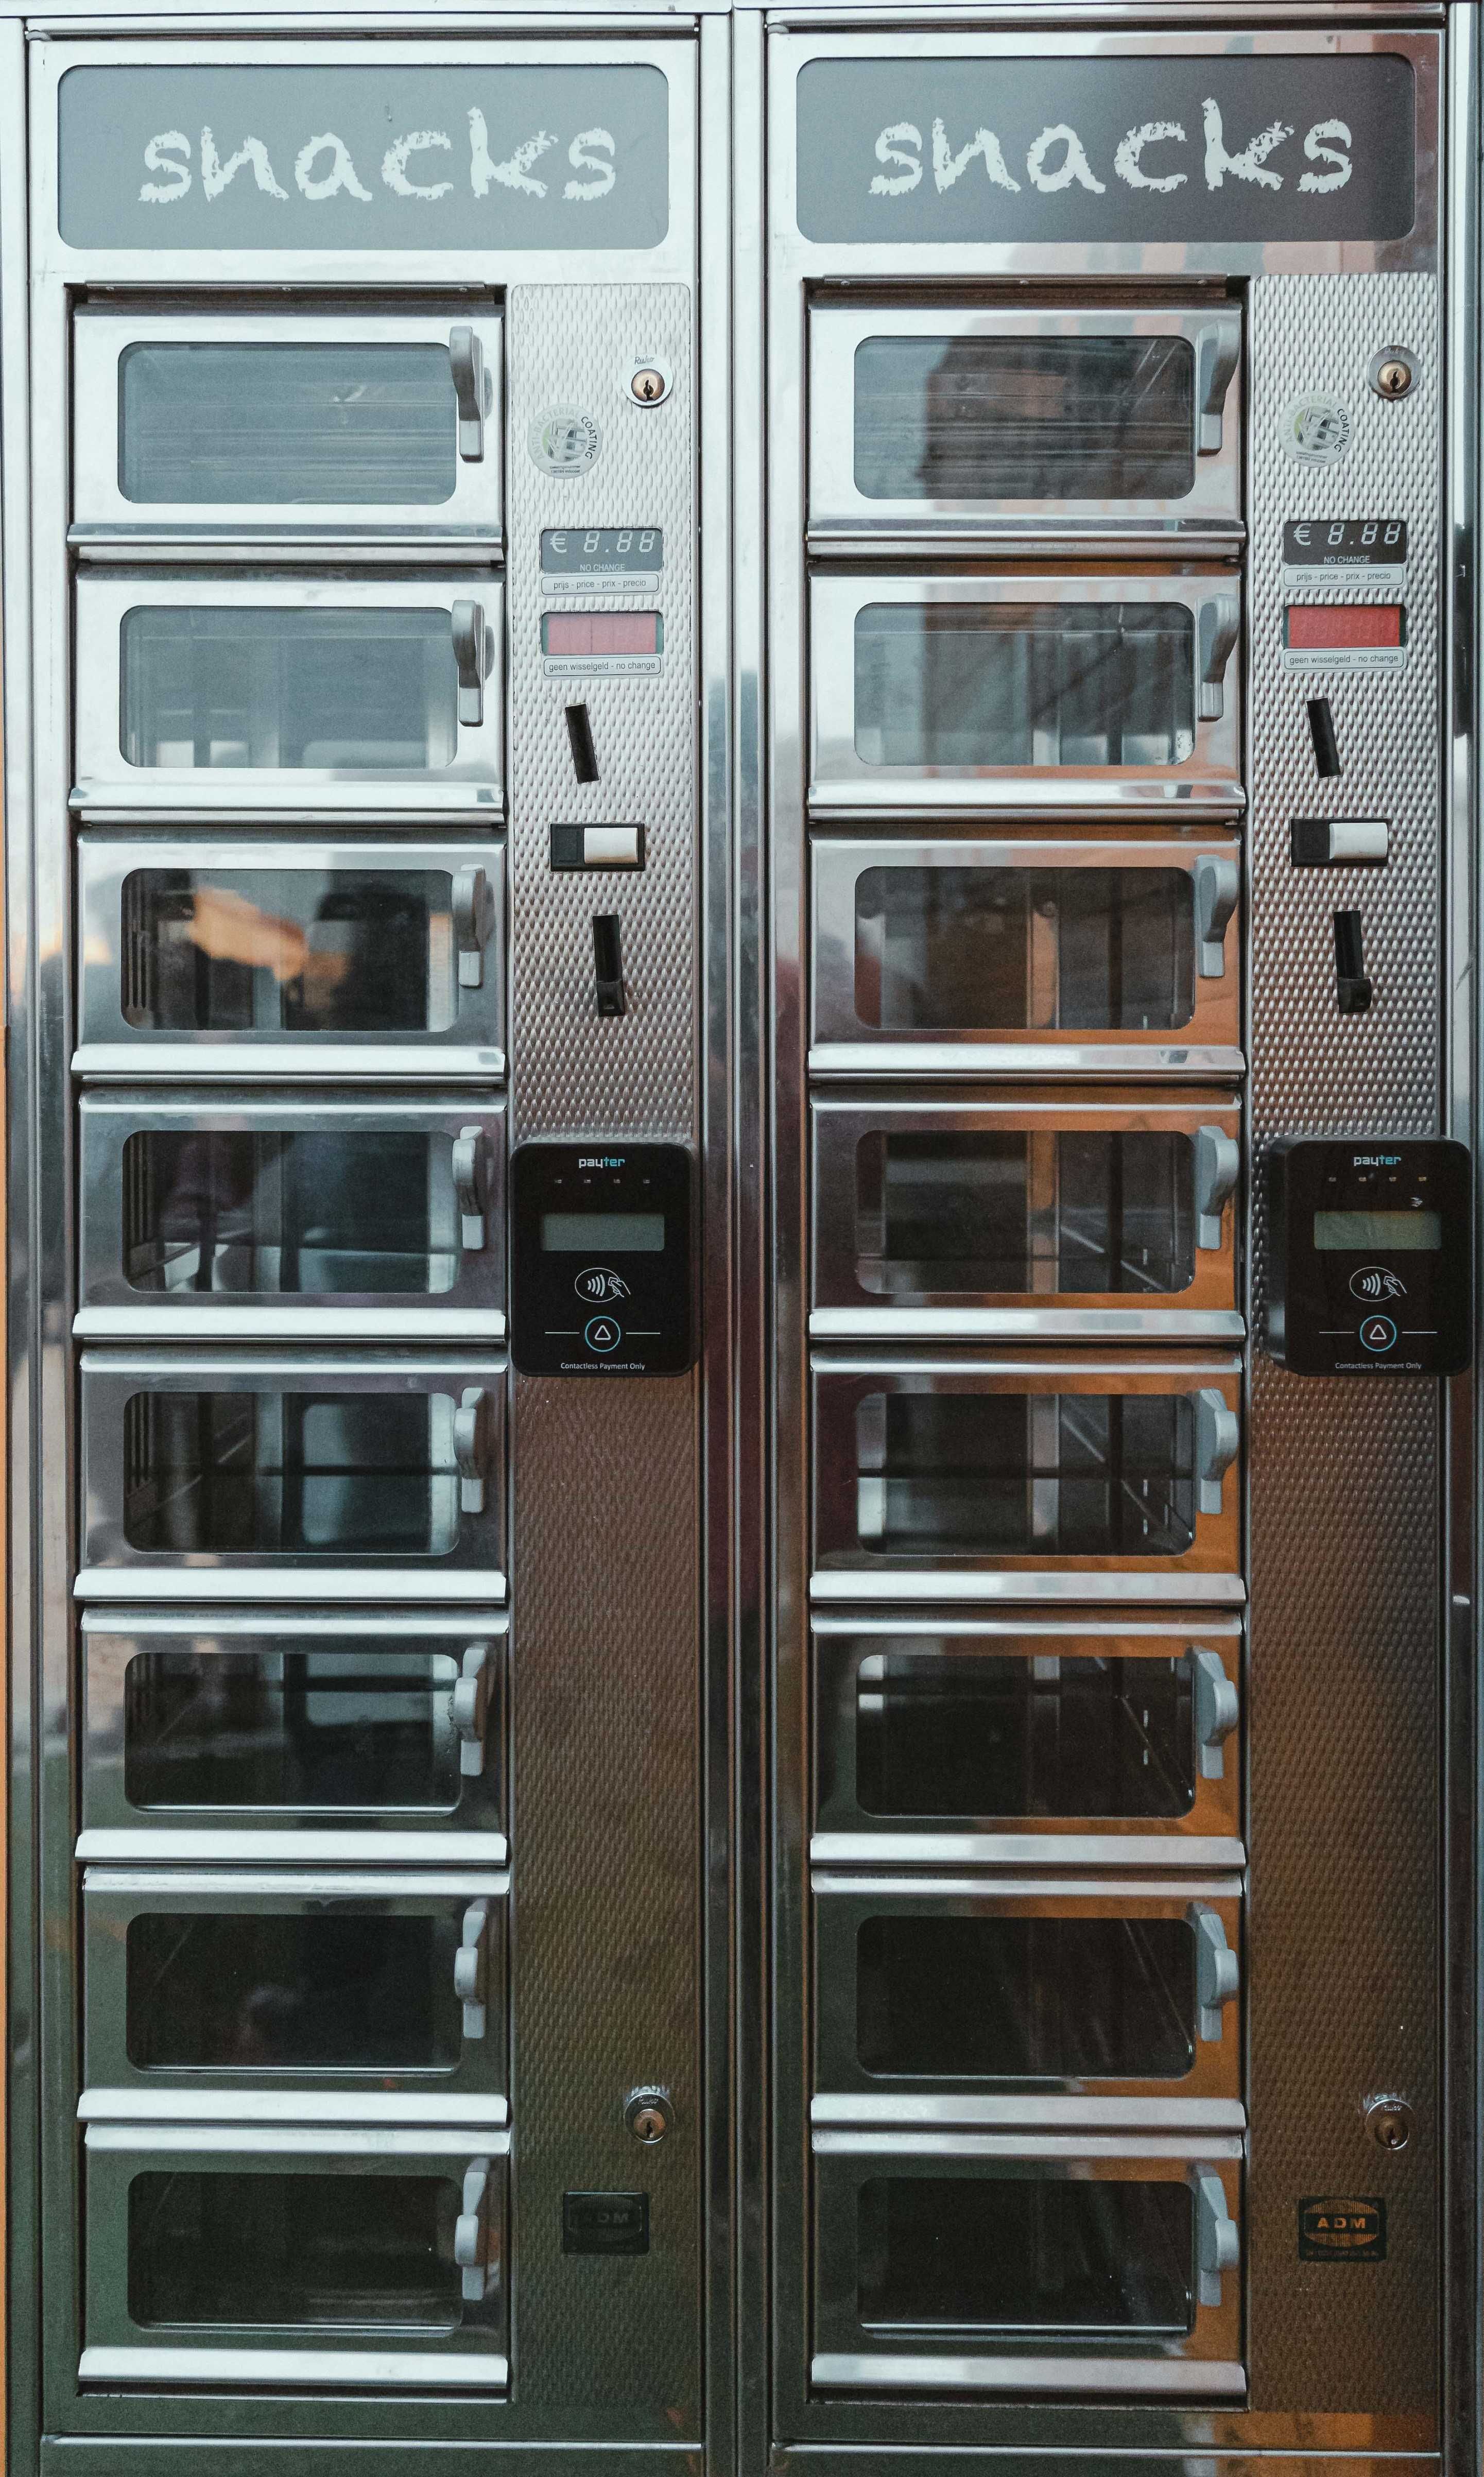 Vending Machines - Novas